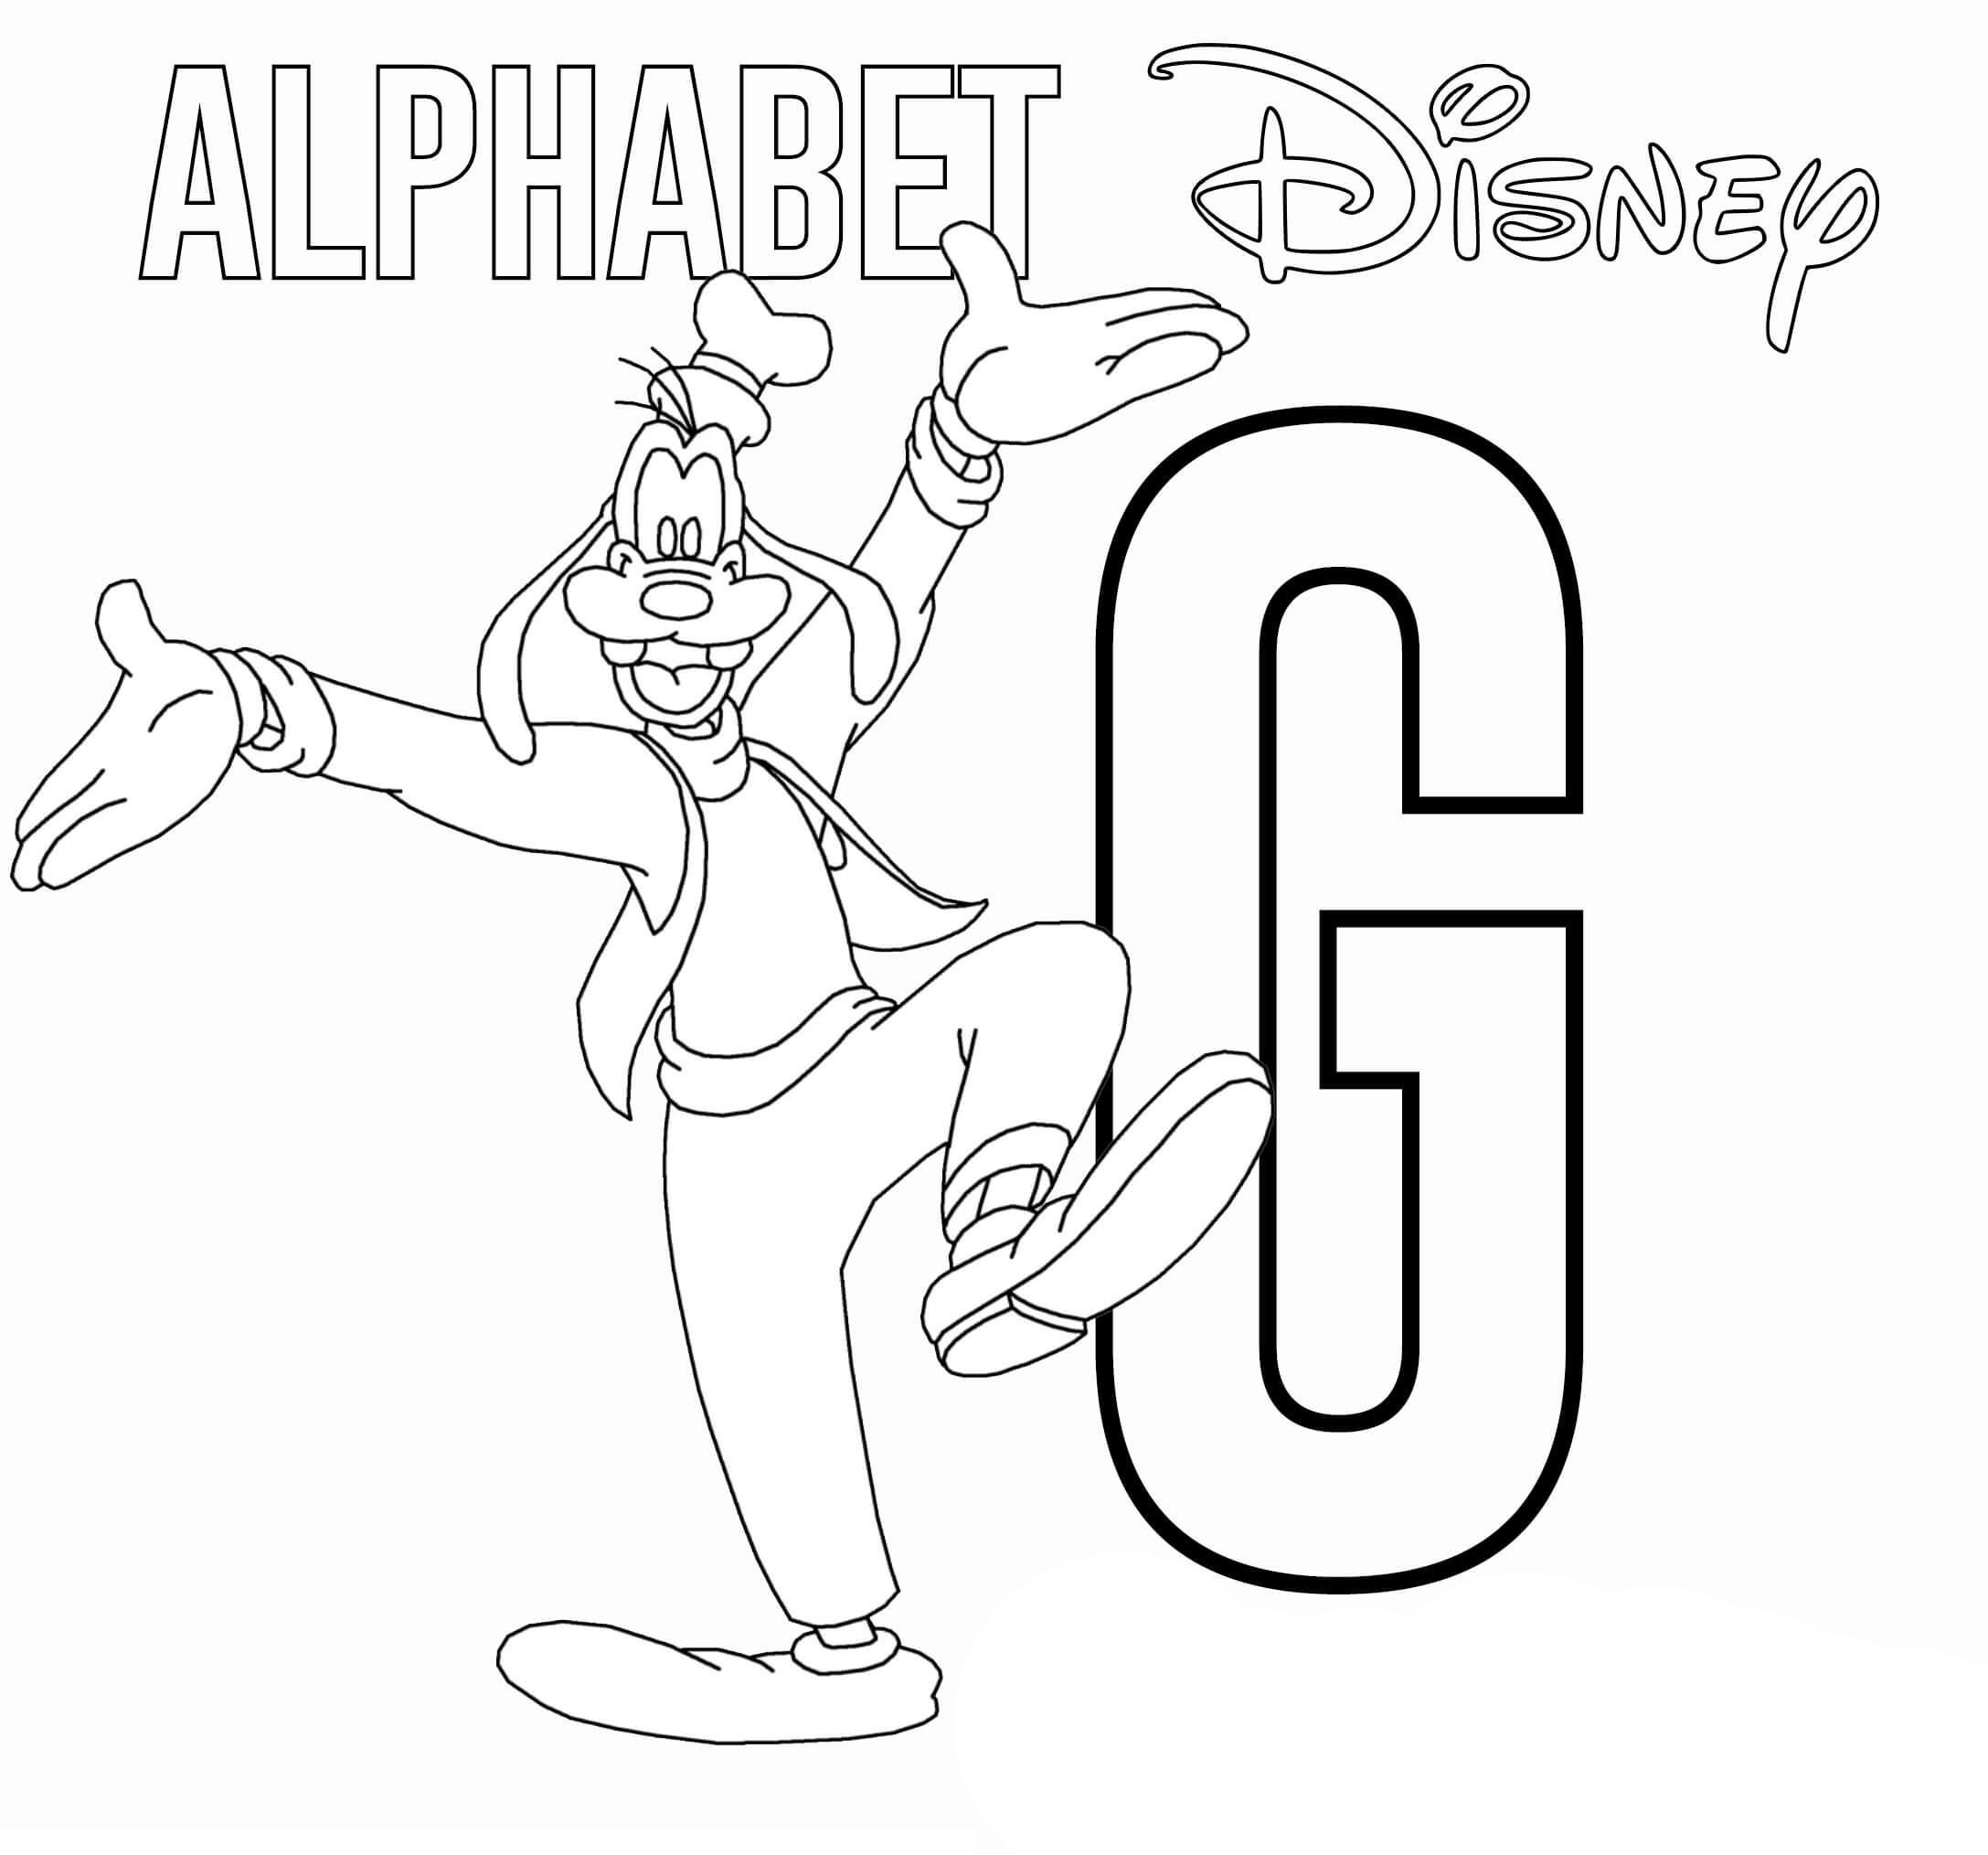 G 代表高飞 (Goofy)